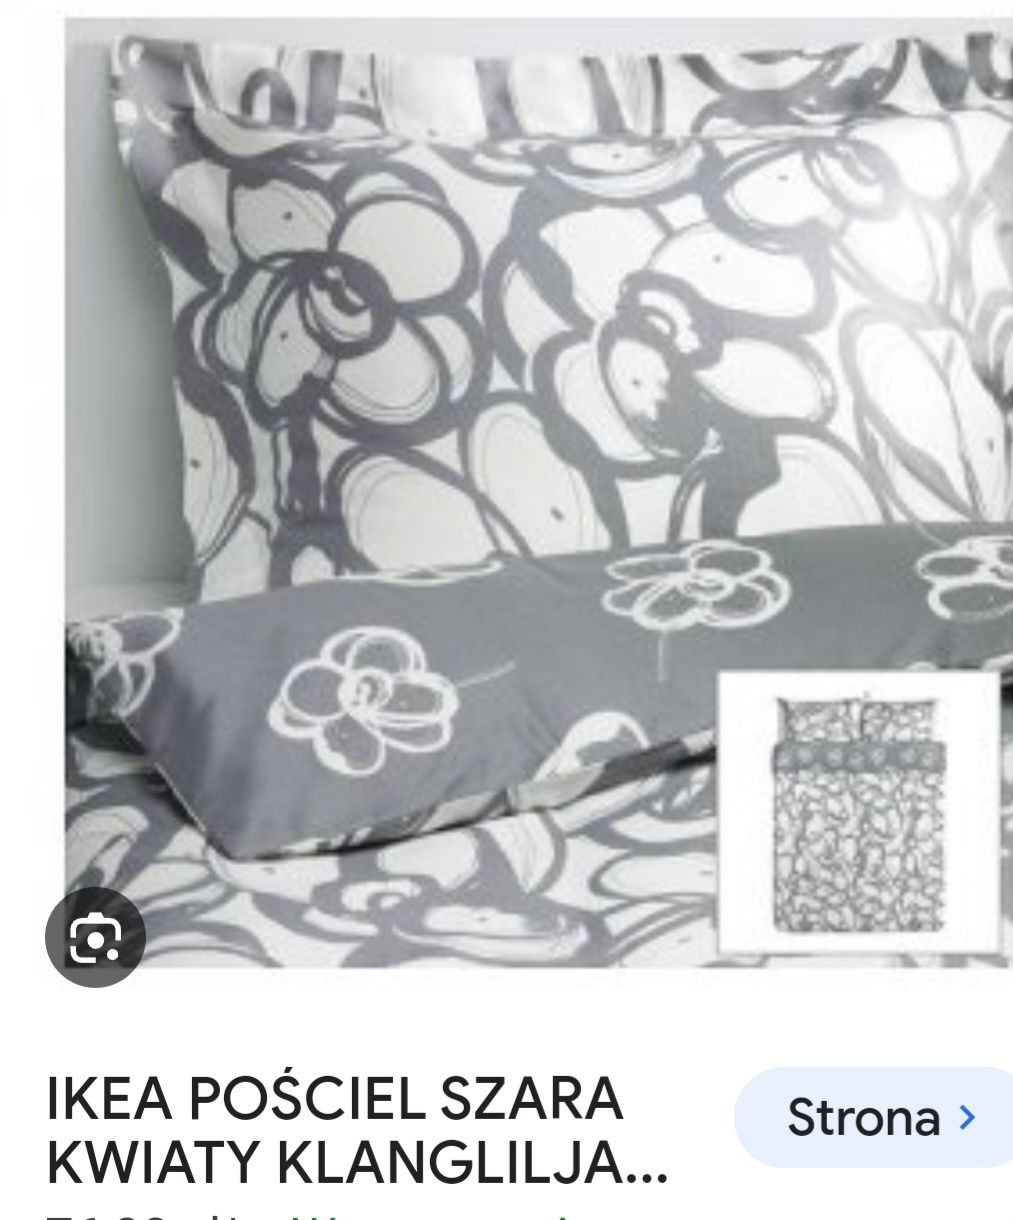 Pościel Ikea nowa piękna